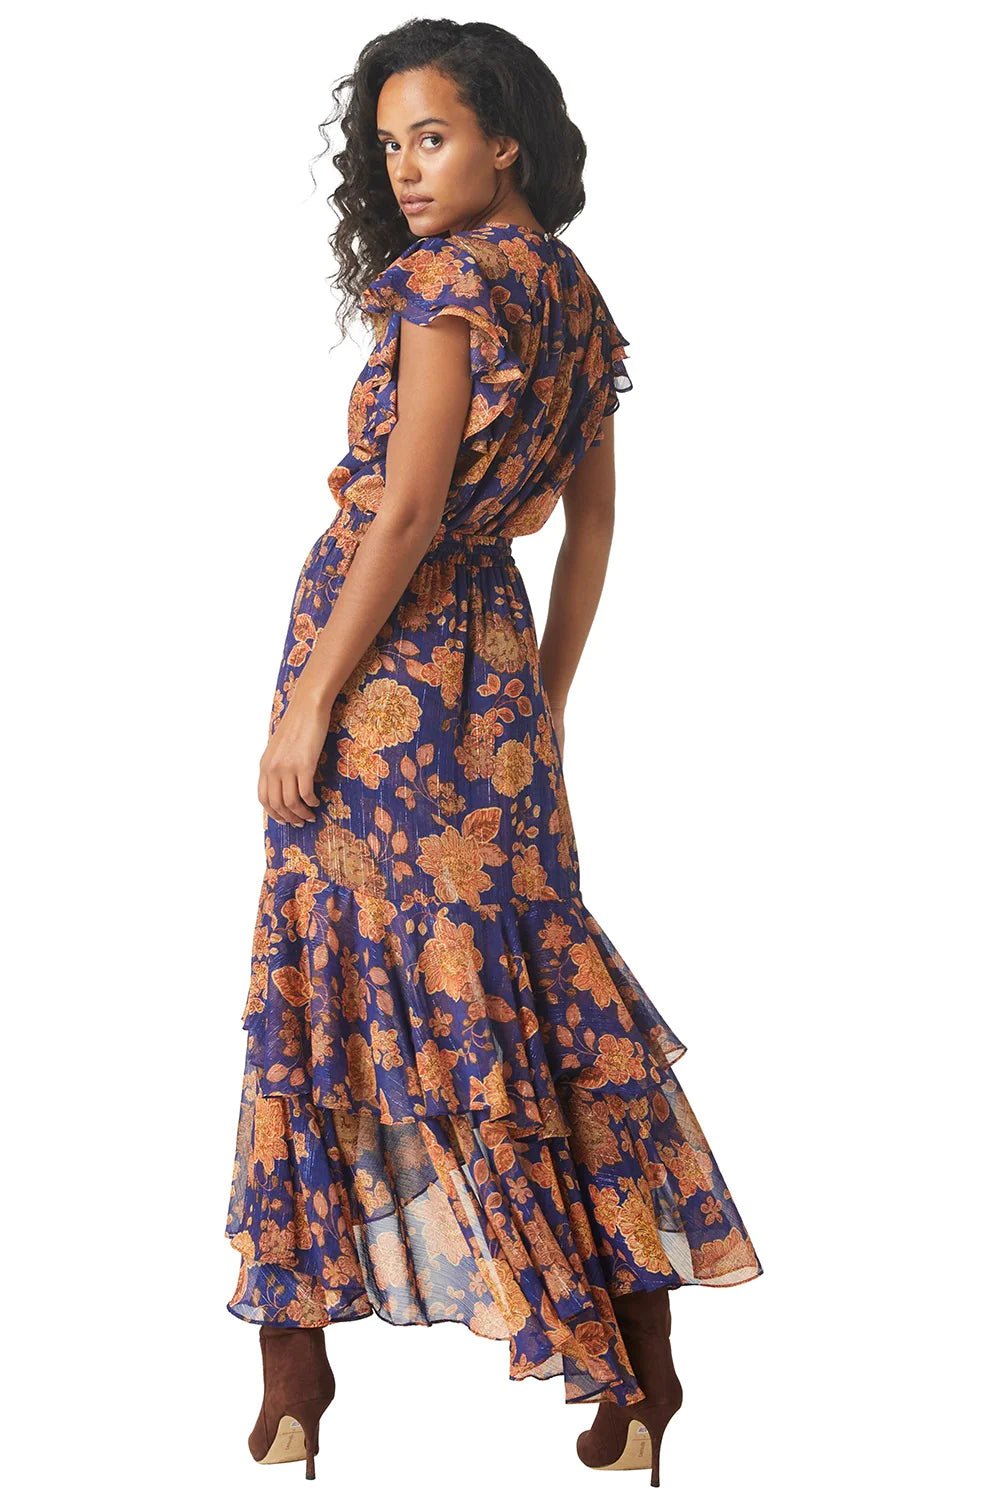 Misa Seva Skirt in Marigold Flora - Estilo Boutique